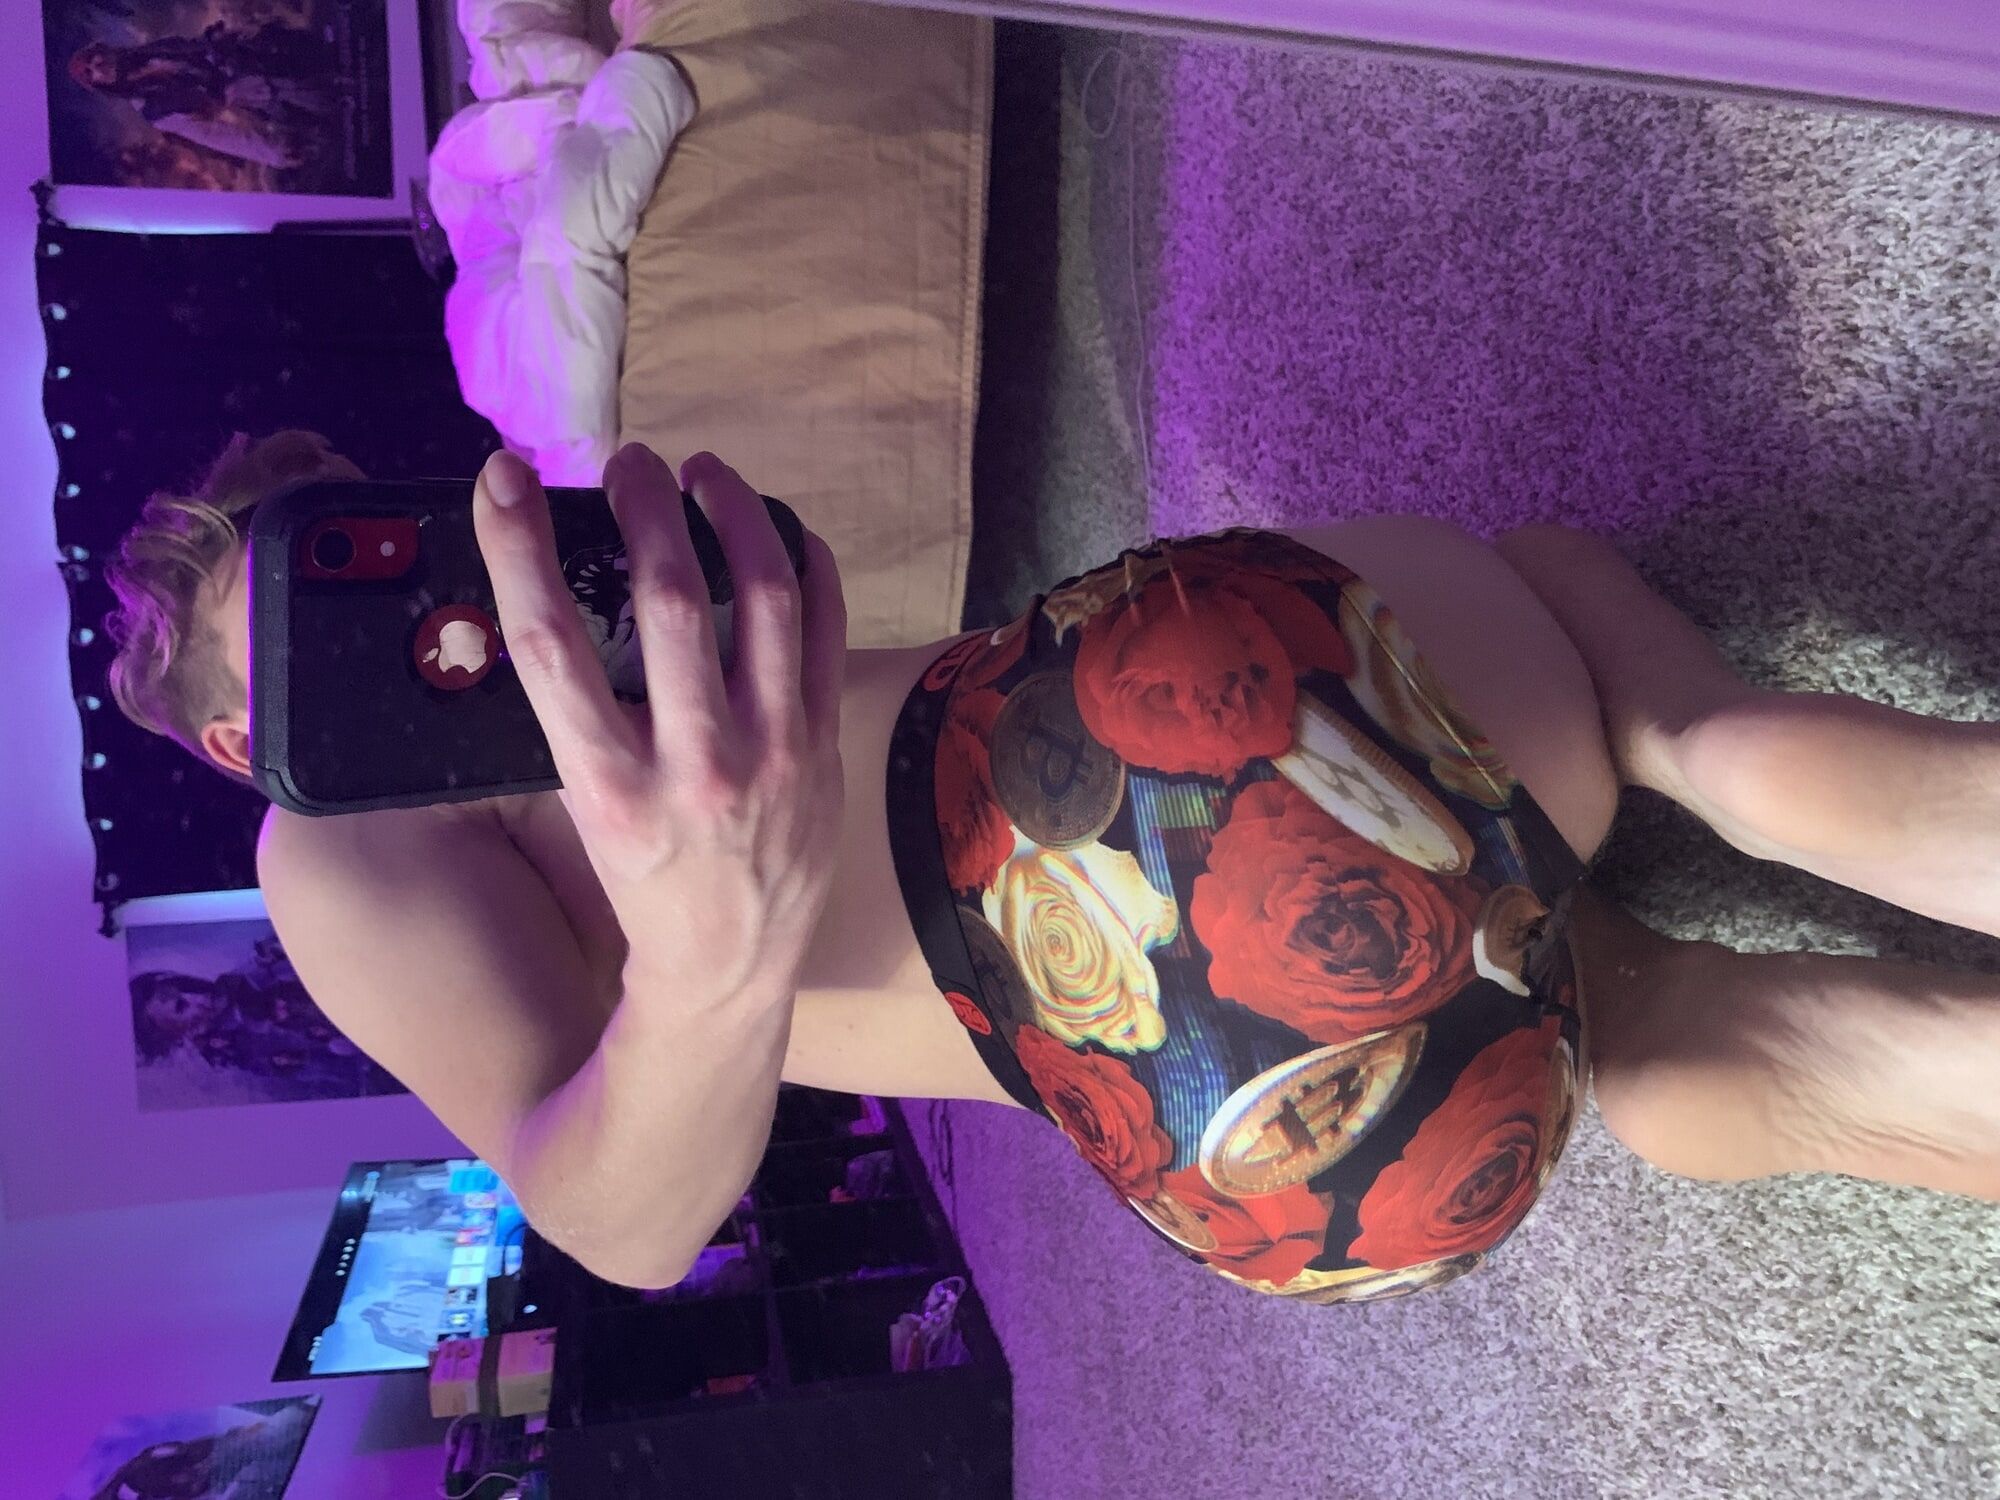 Young Femboy Virgin Ass Bedroom Selfies 